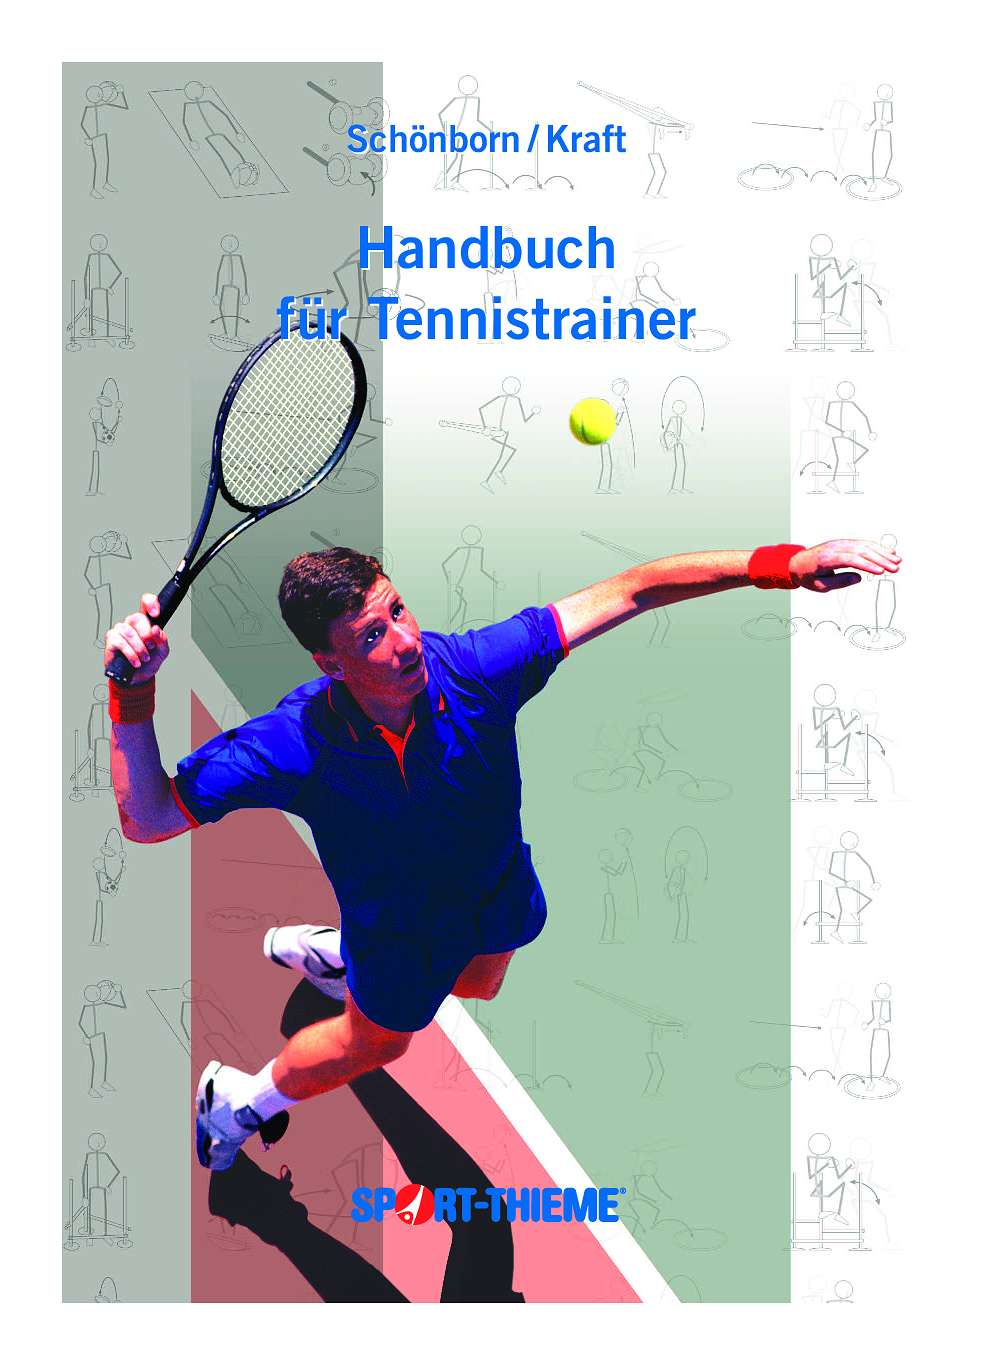 Handbuch für Tennistrainer